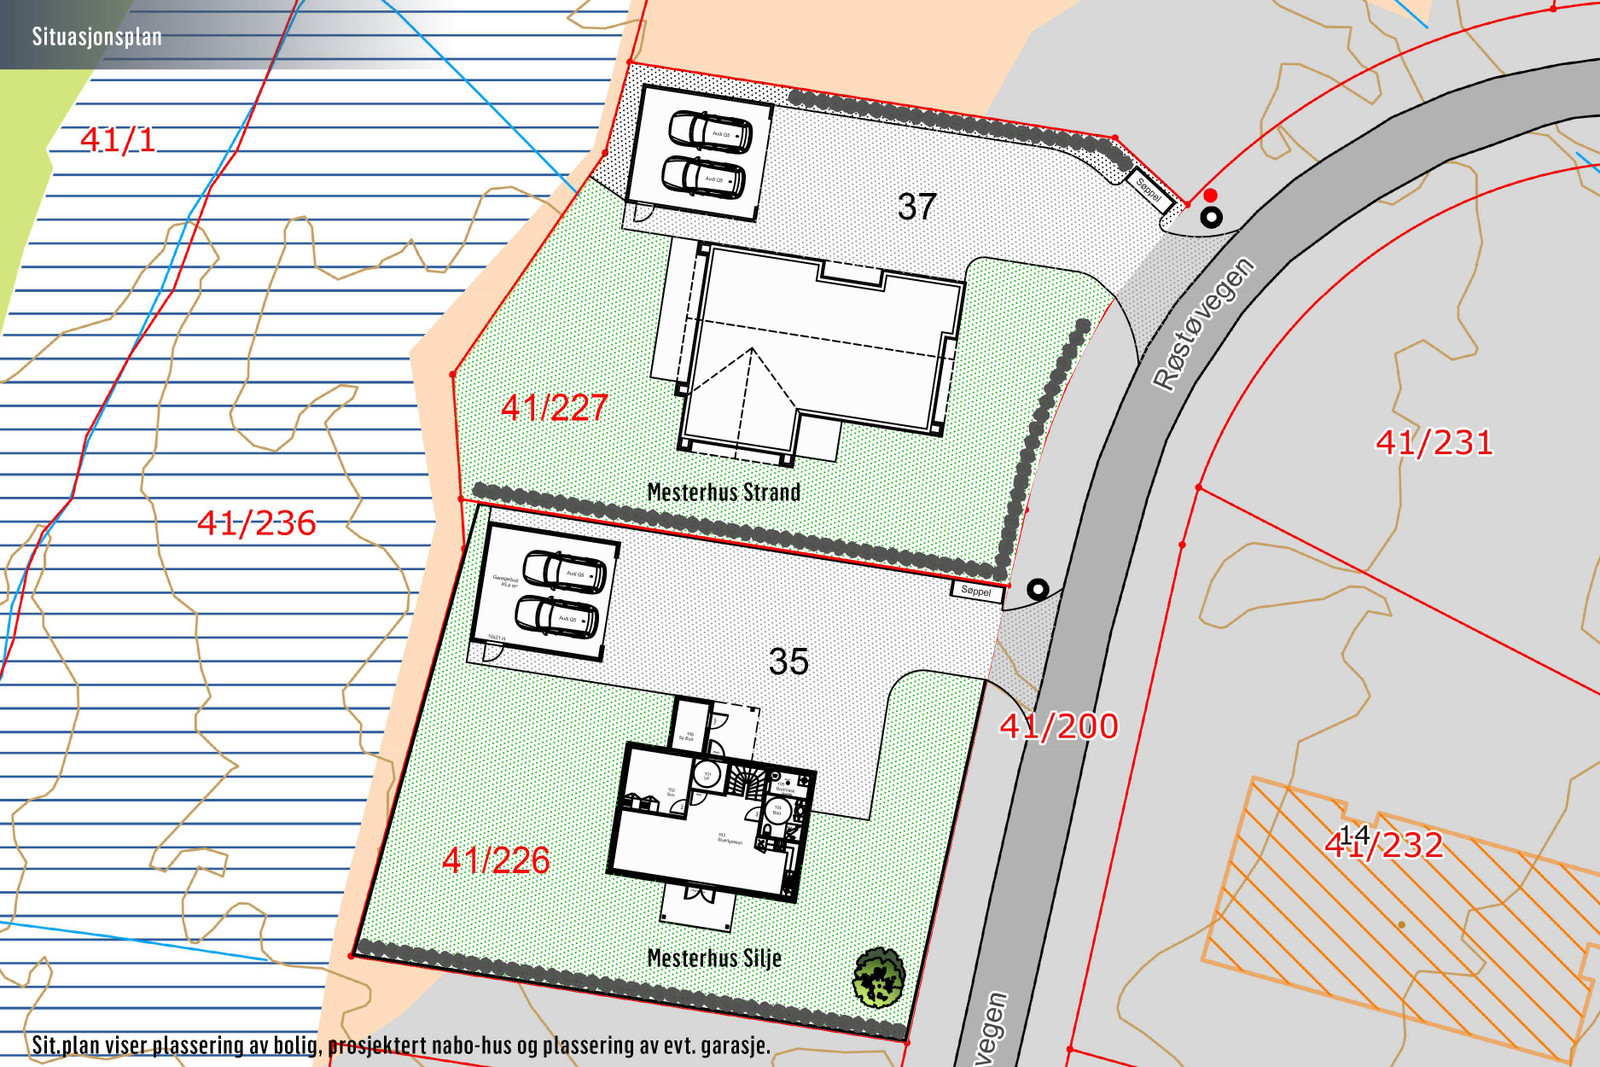 Sit.plan viser plassering av bolig, prosjektert nabo-hus og plassering av evt. garasje.